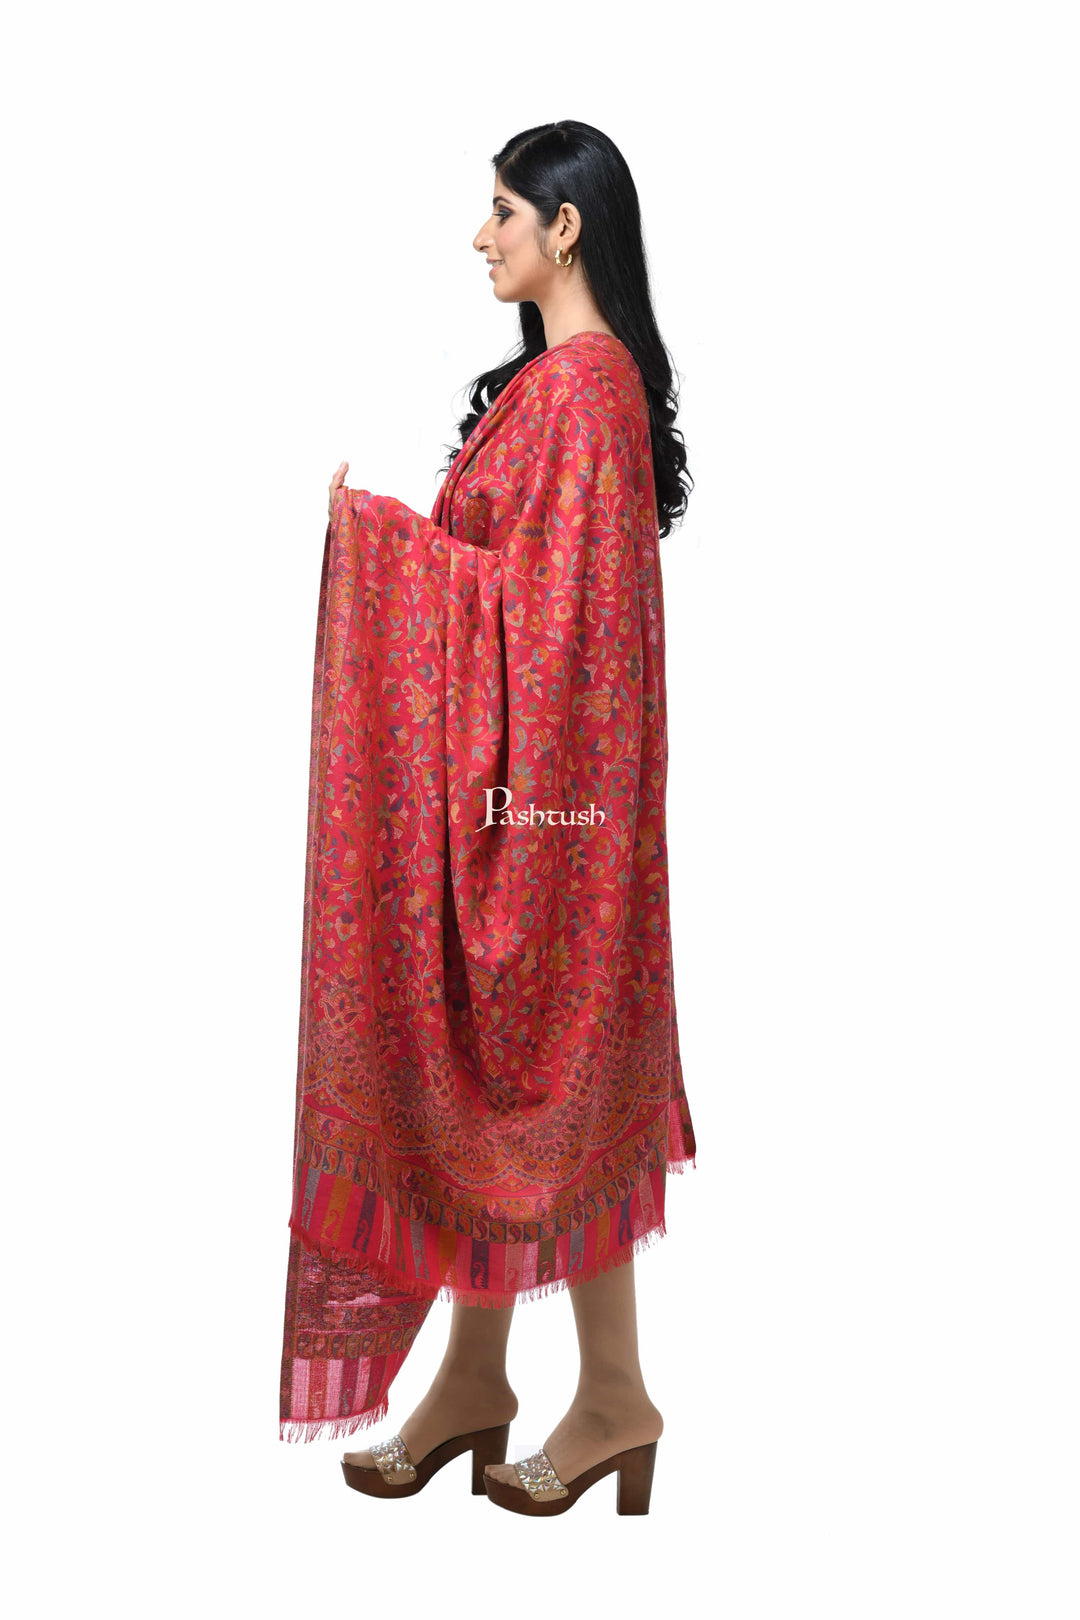 Pashwool Womens Shawls Pashwool Womens Ethnic Design Shawl, Light Weight, Soft And Warm, Pink